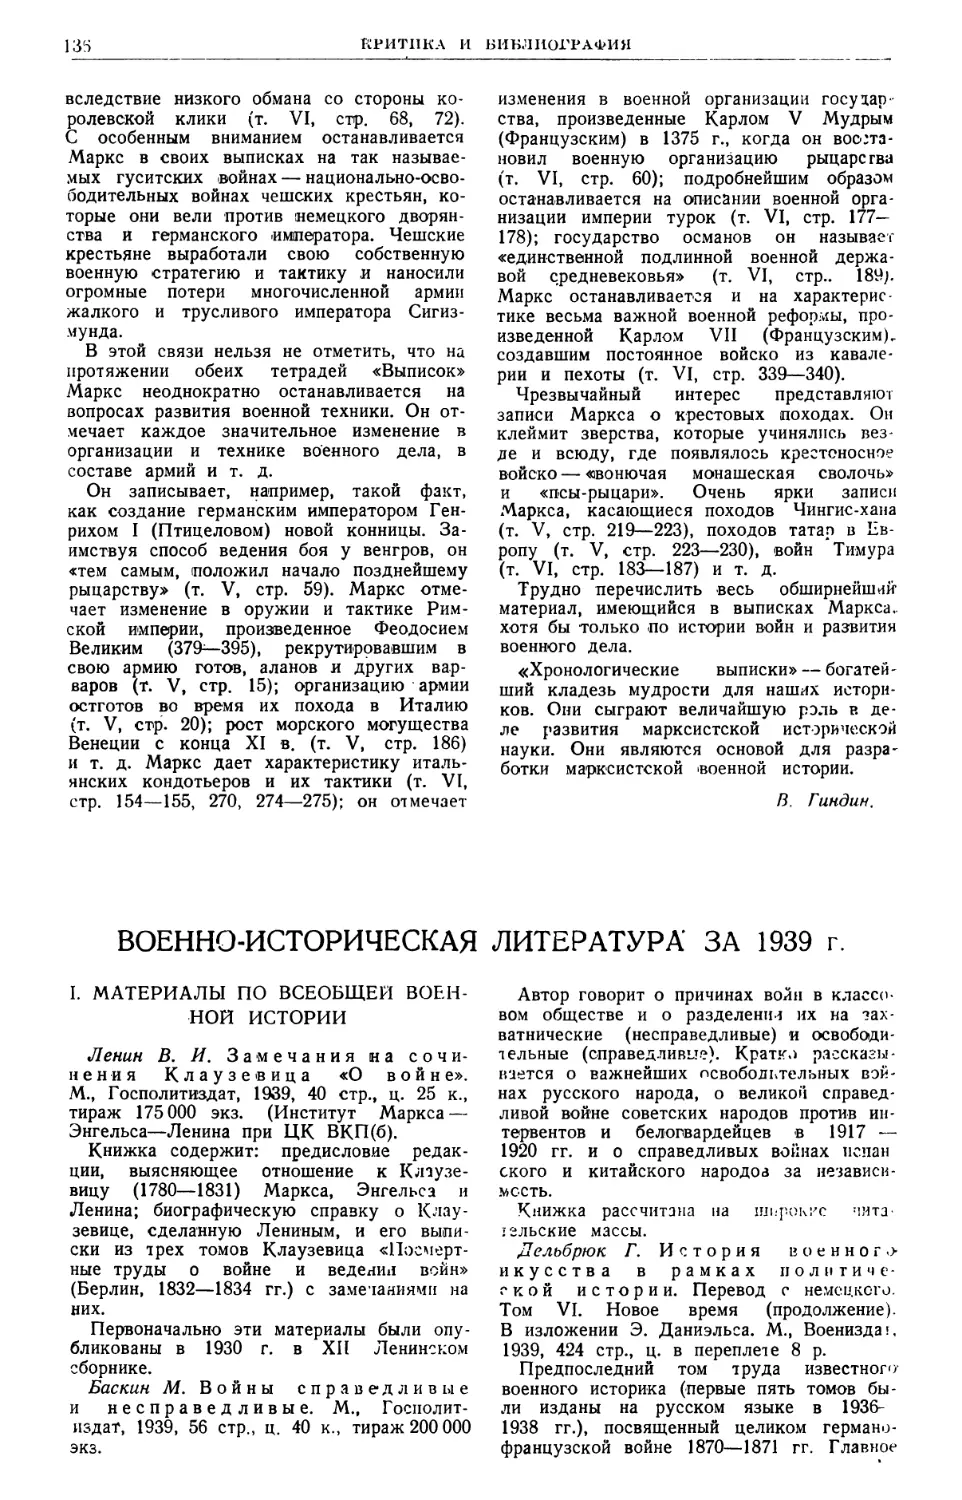 Военно-историческая литература за 1939 г. В. Невский